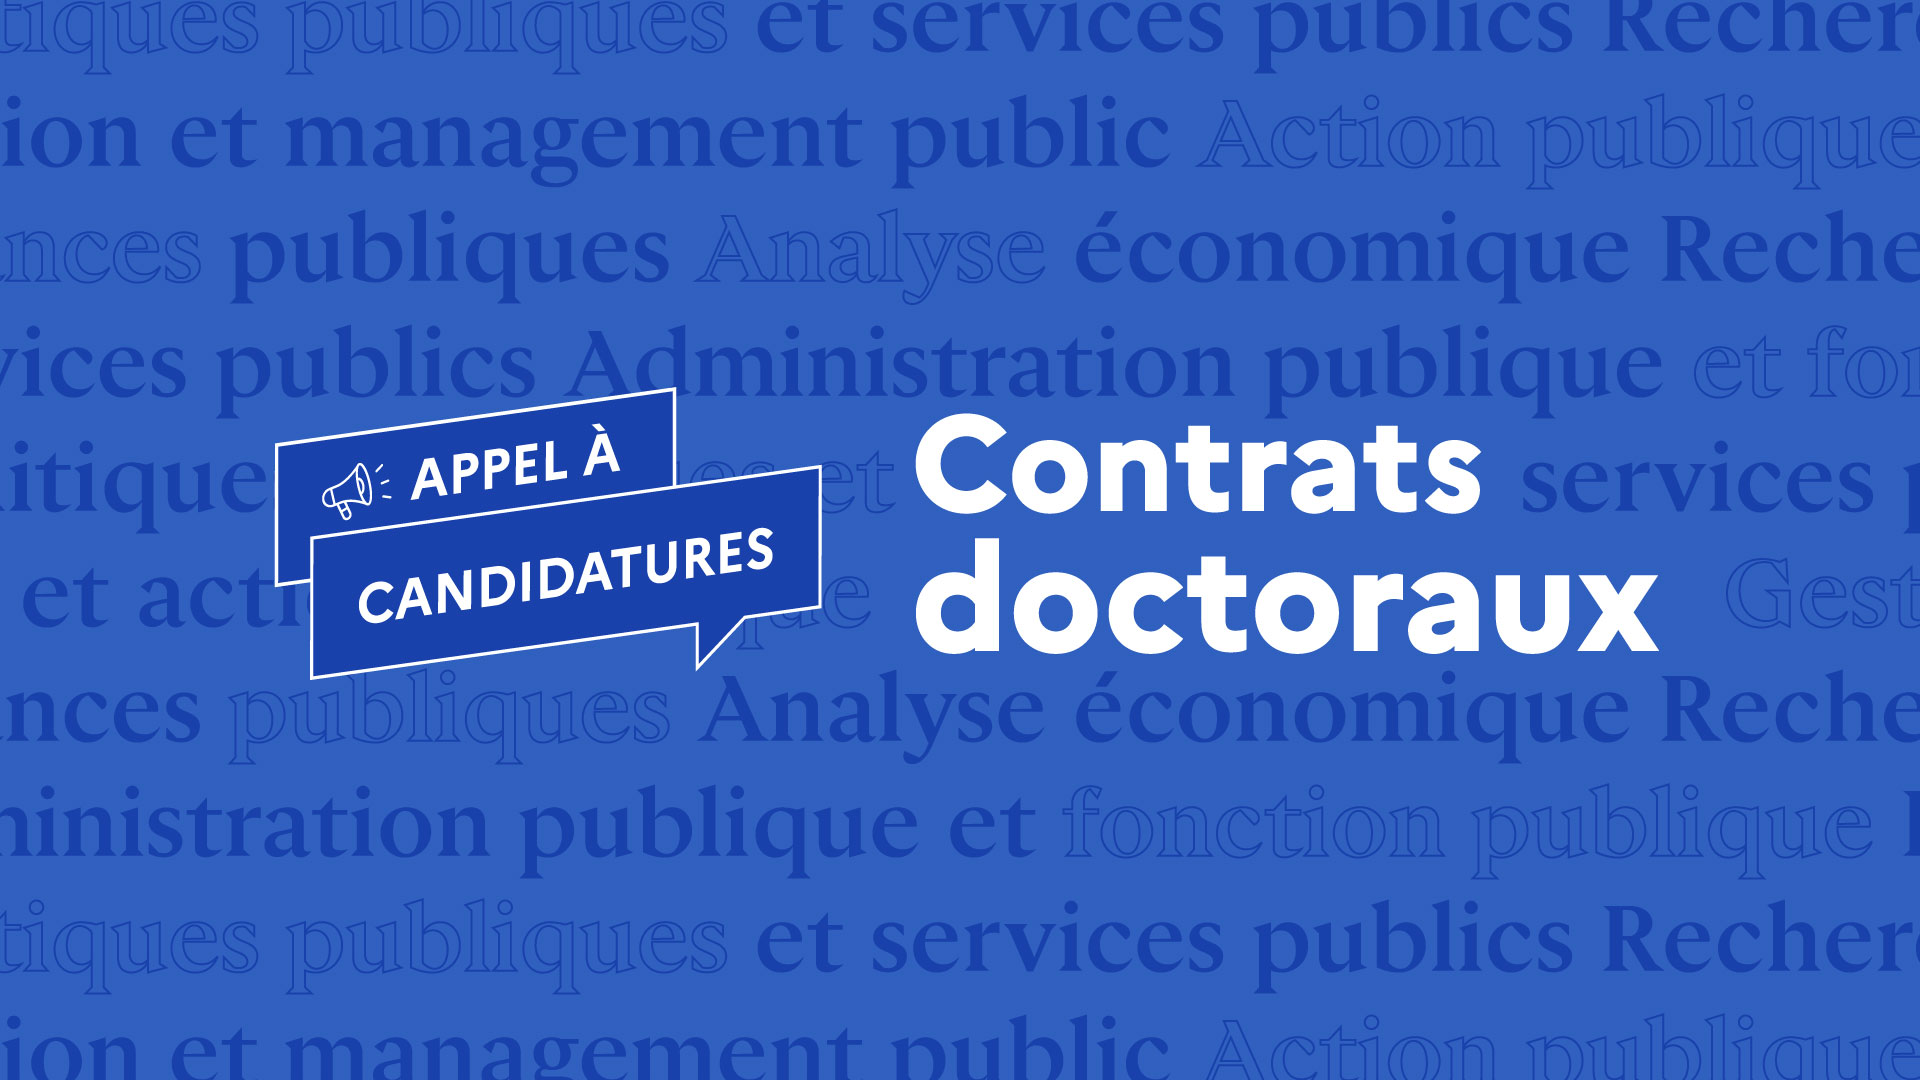 Financement de contrats doctoraux | Institut national du service public |  INSP